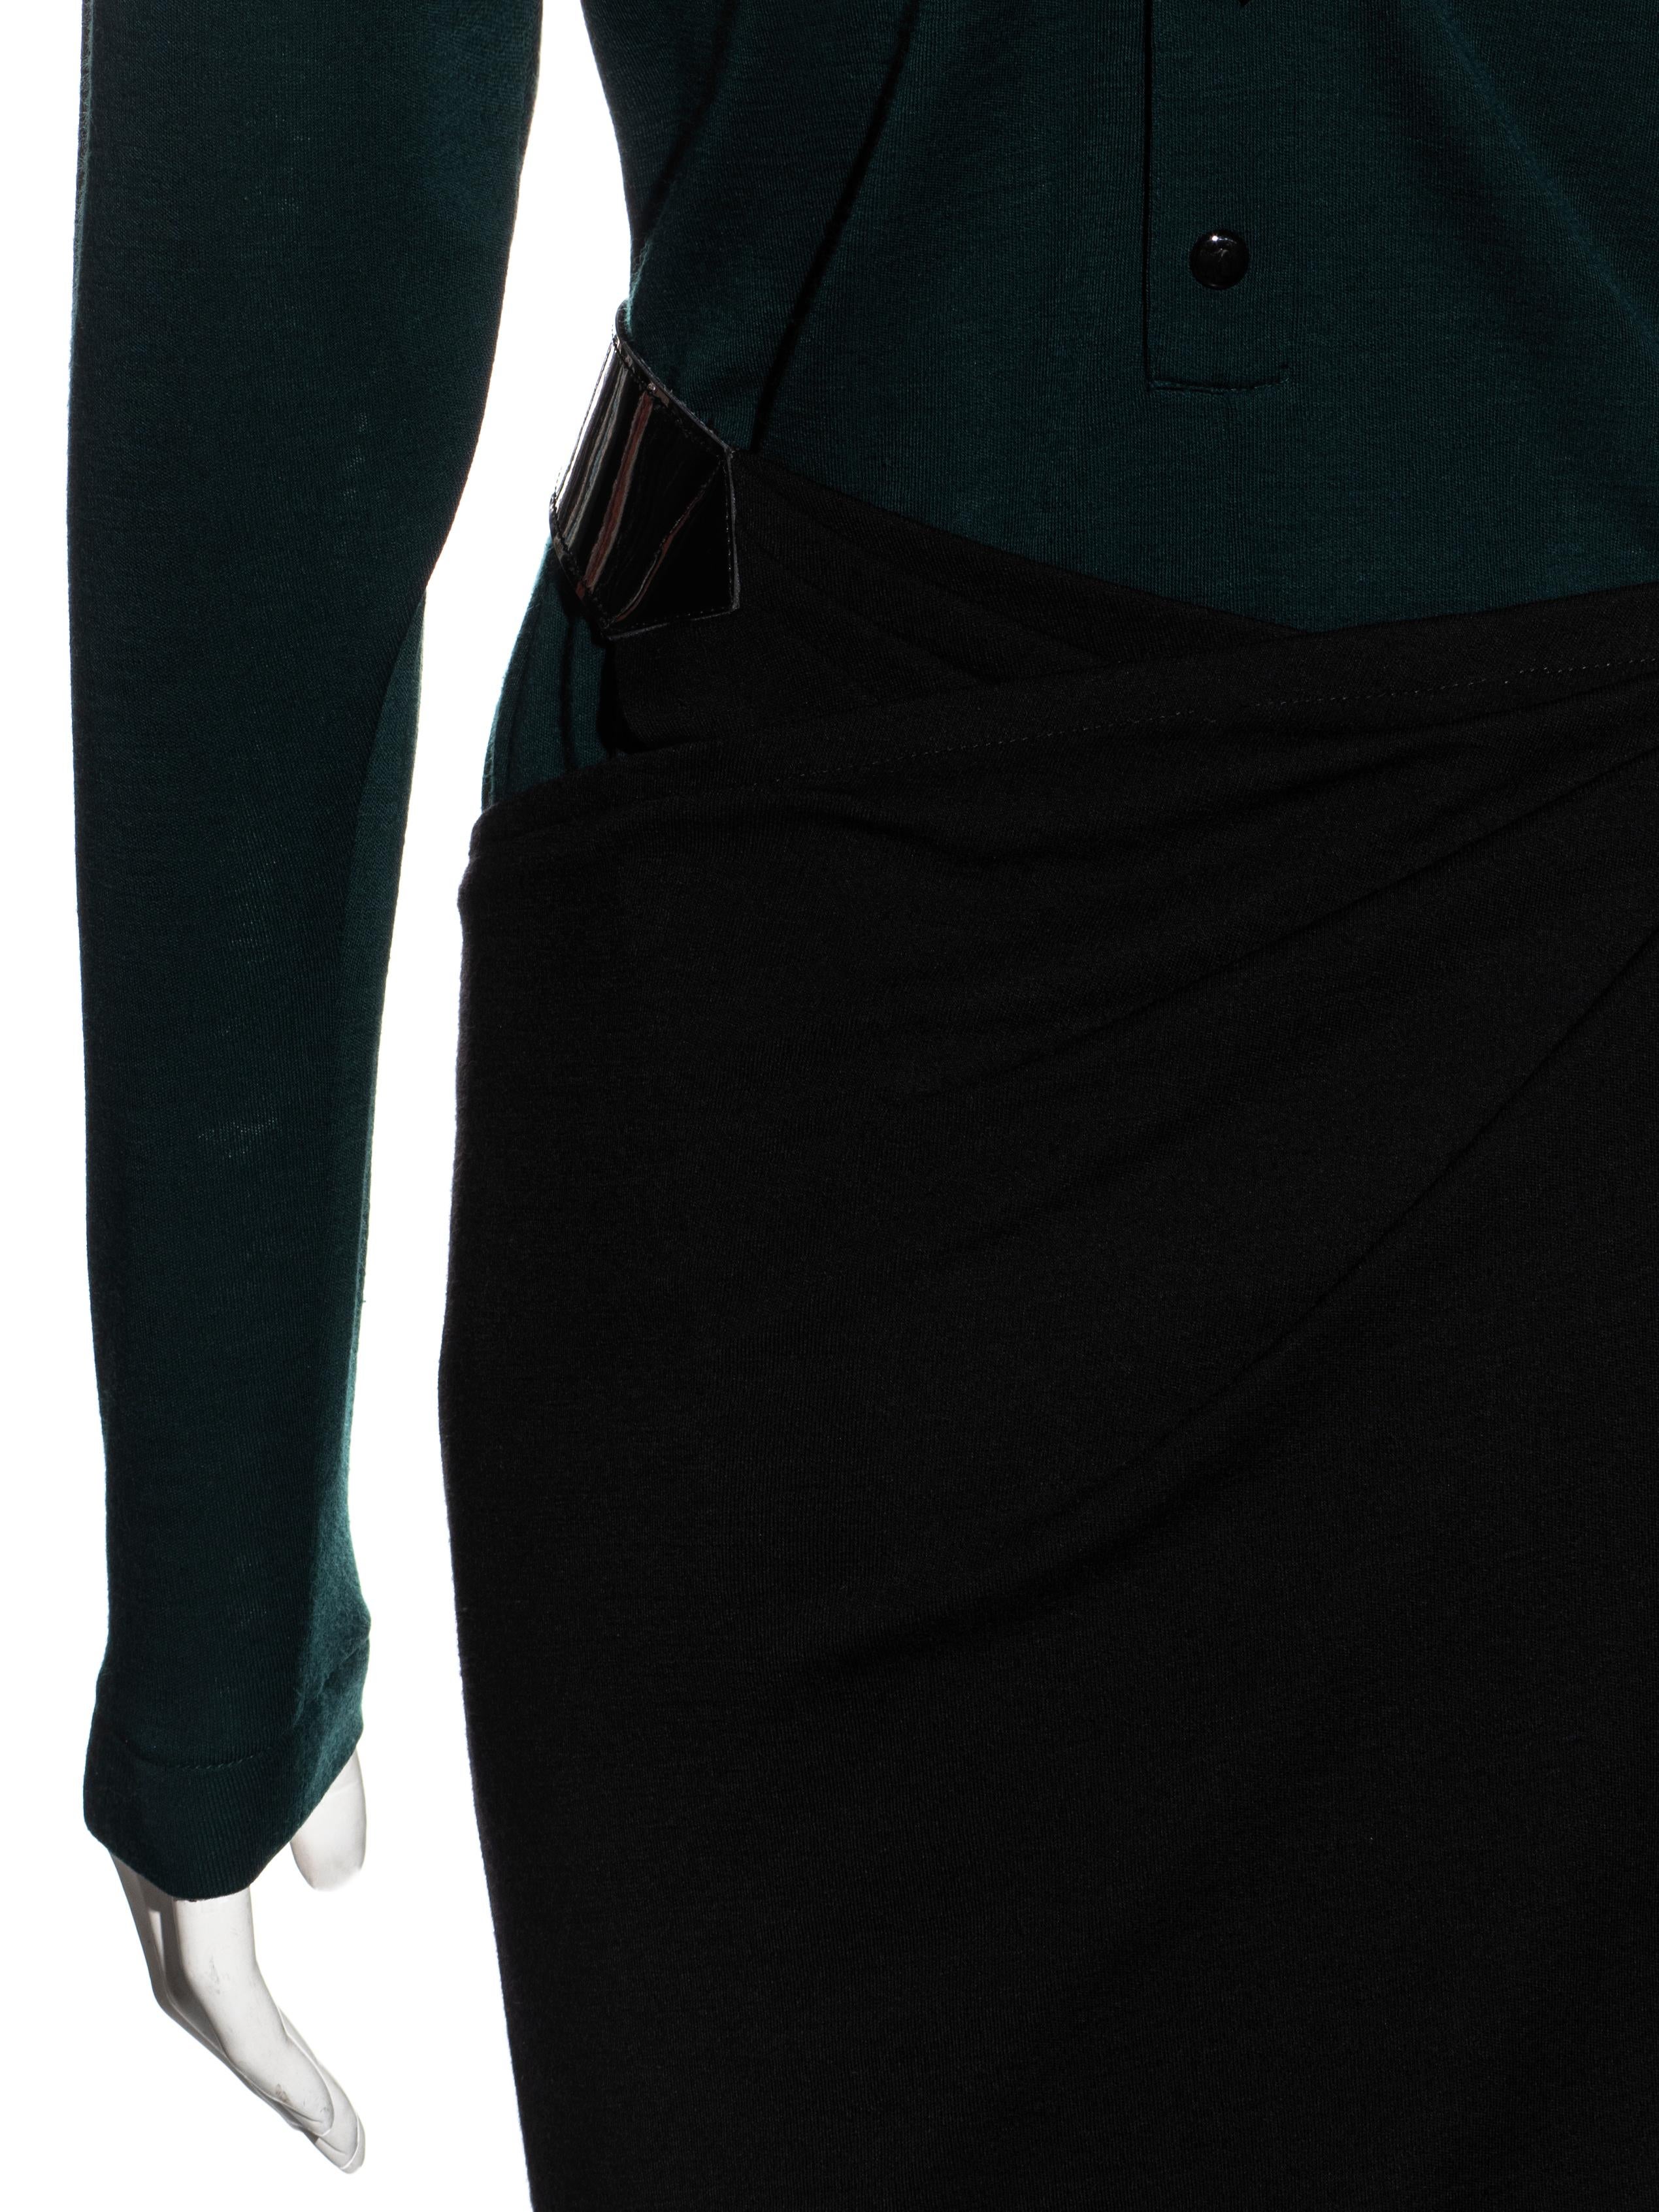 Azzedine Alaïa - Robe portefeuille en jersey de laine vert et noir, fw 1982 en vente 4